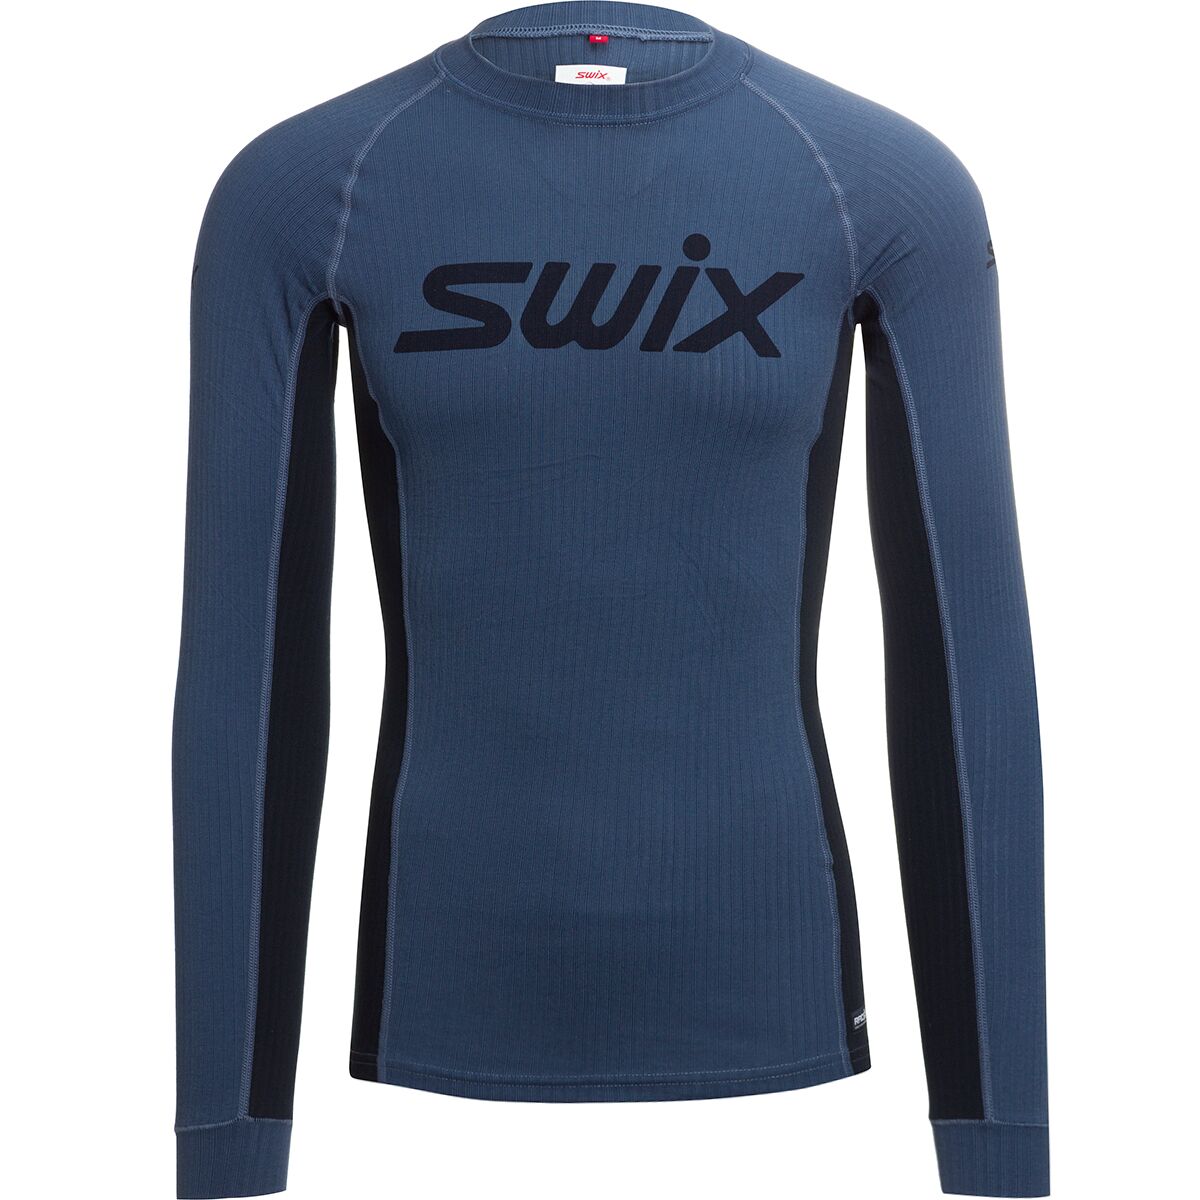 Swix RaceX Bodywear Long-Sleeve Top - Men's